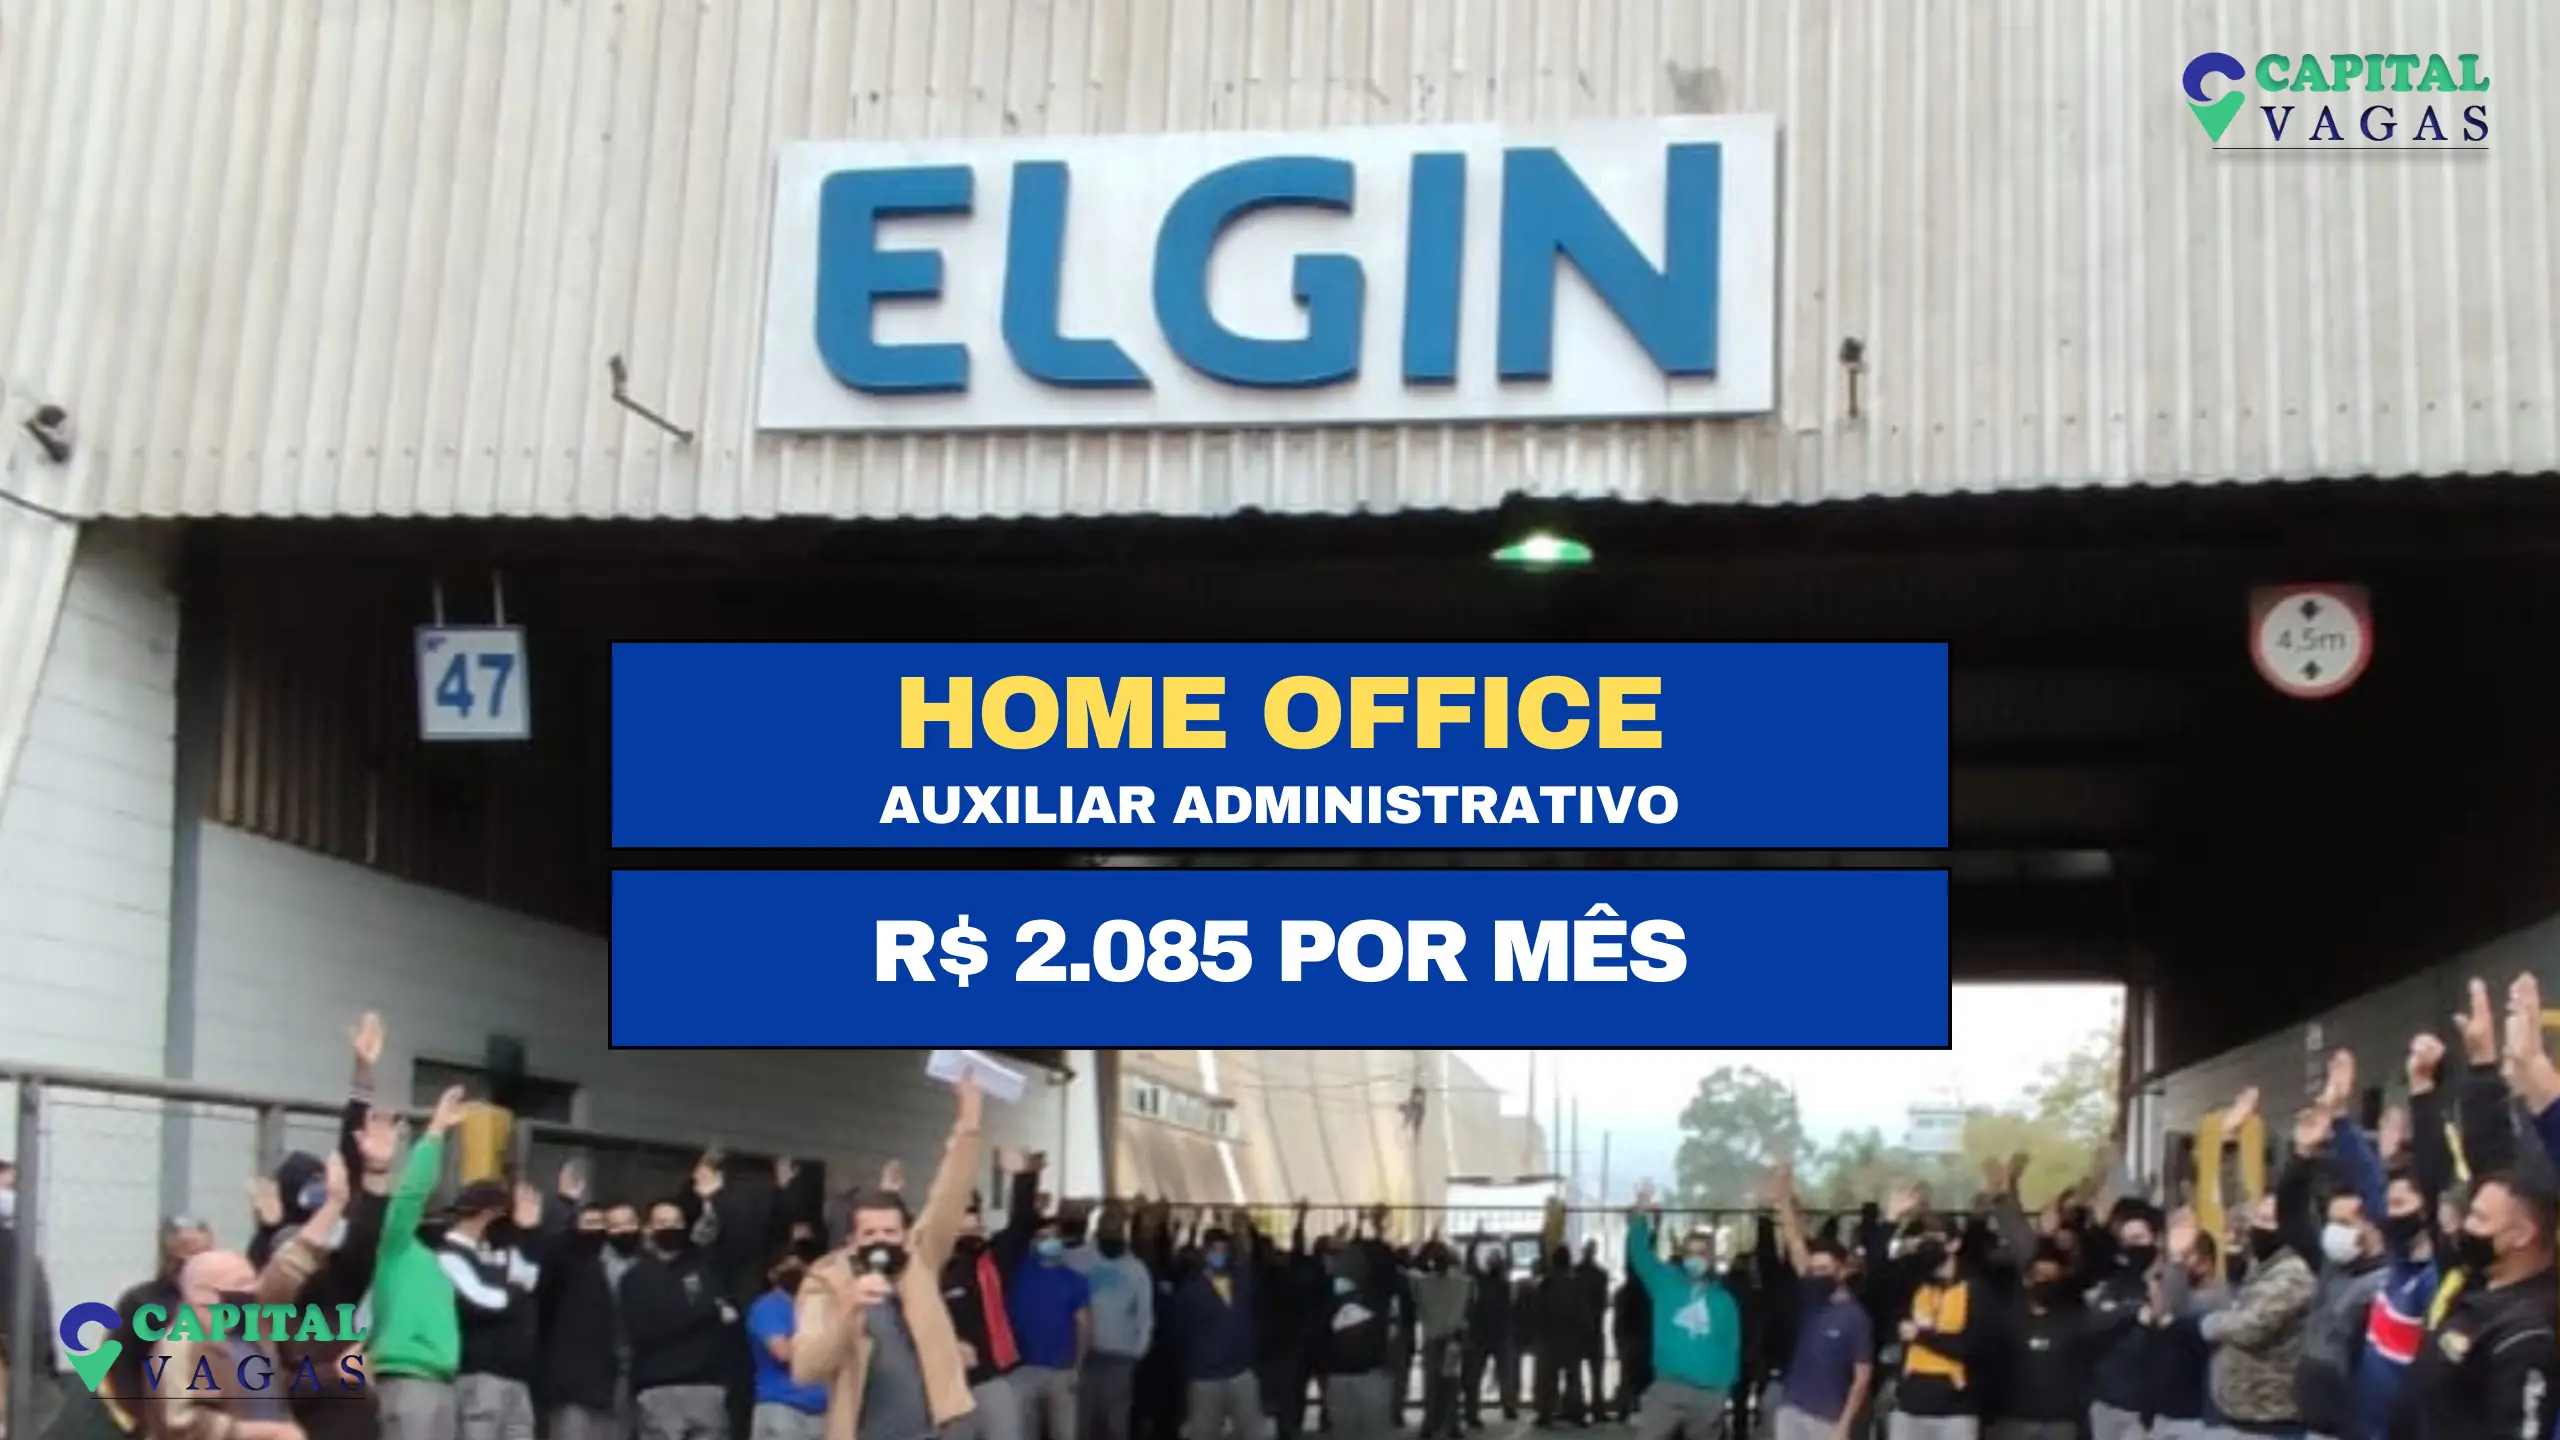 Trabalhe de Casa: Elgin S/A abre vagas HOME OFFICE SEM EXPERIÊNCIA para Auxiliar Administrativo com salário de R$ 2.085 por mês